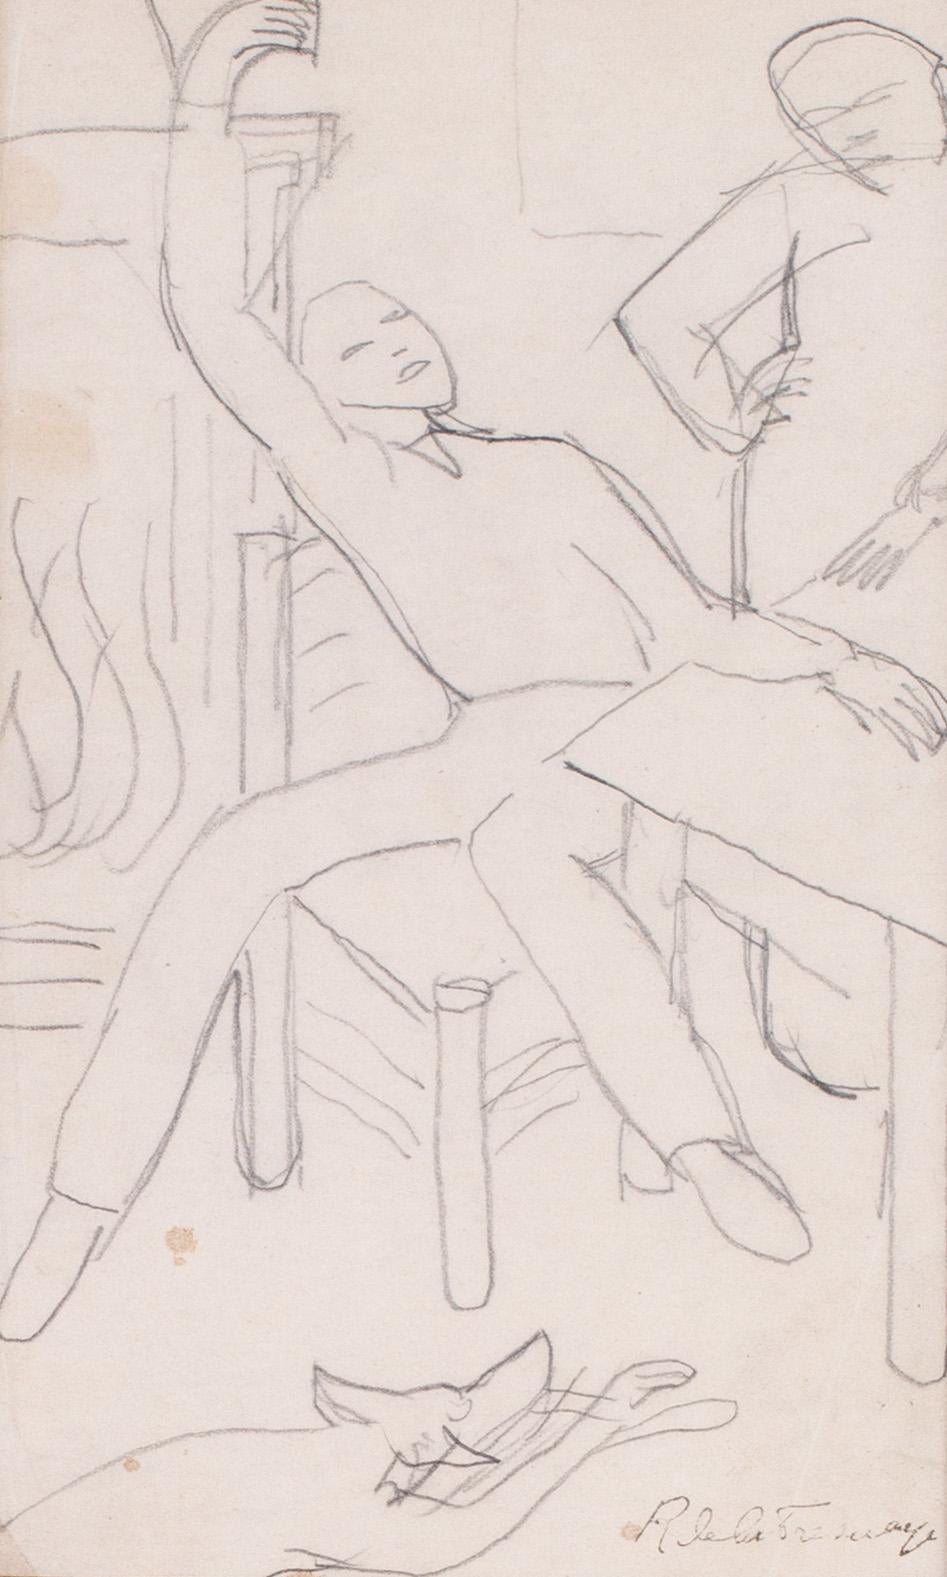 Early 20th Century French drawing by Cubist artist de La Fresnaye - Art by Roger de la Fresnaye